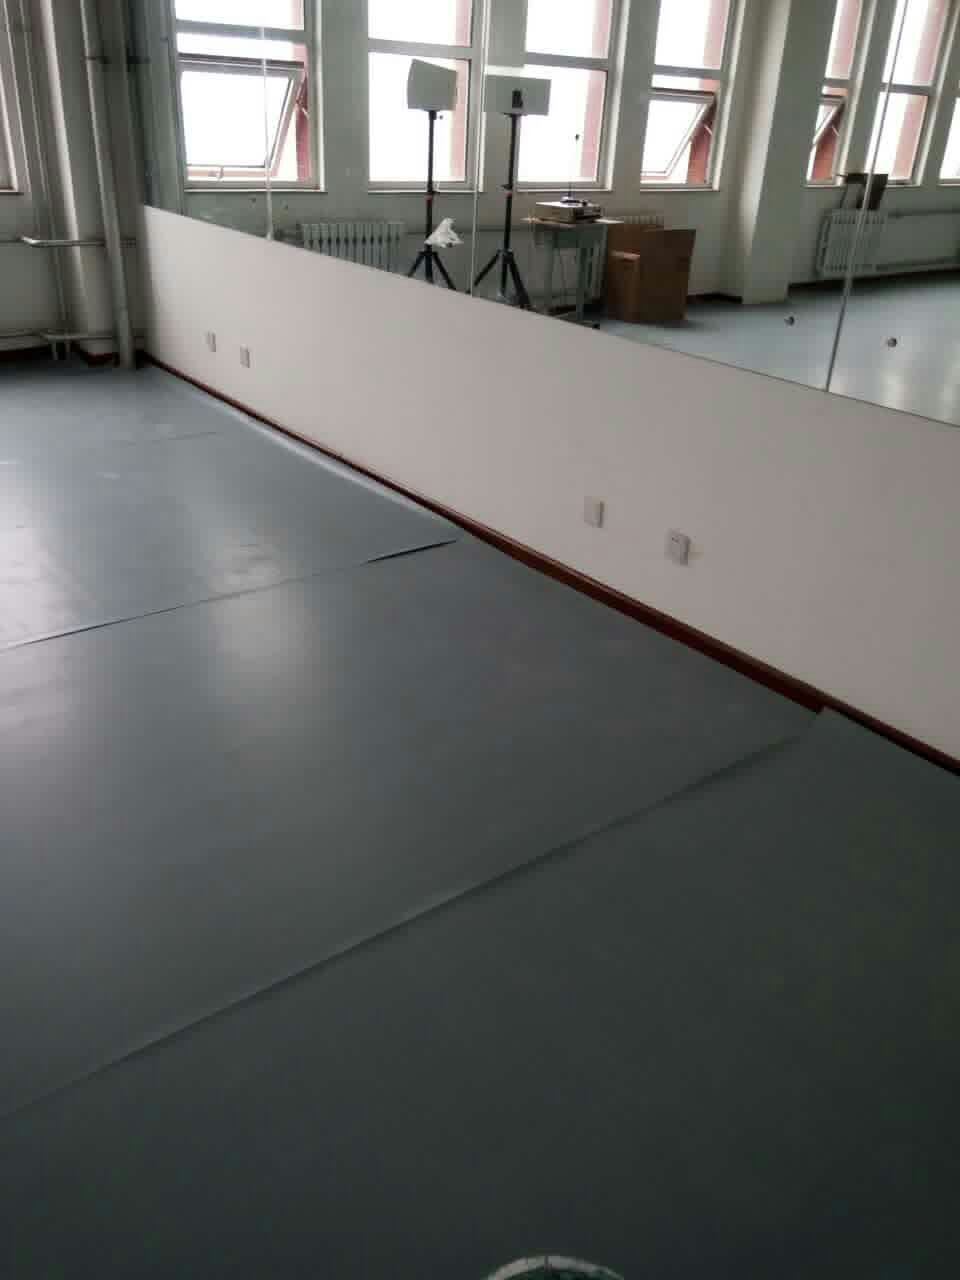 简述舞蹈教室以及舞台地面的铺设材料